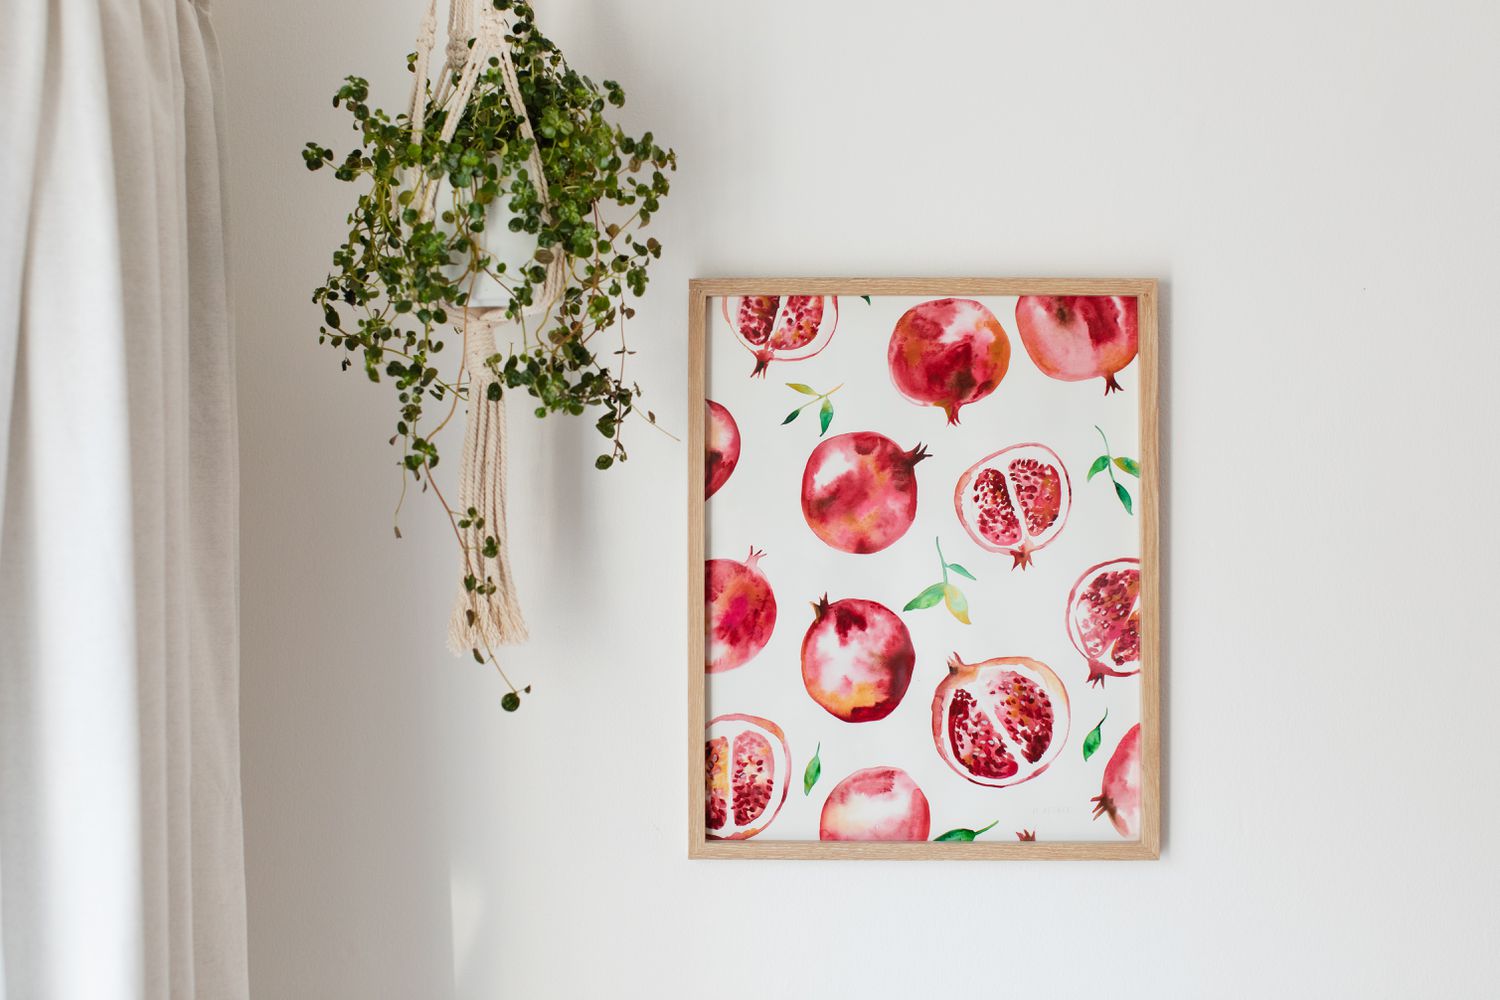 Gerahmter Kunstdruck von Granatäpfeln an der Wand neben einer hängenden Zimmerpflanze